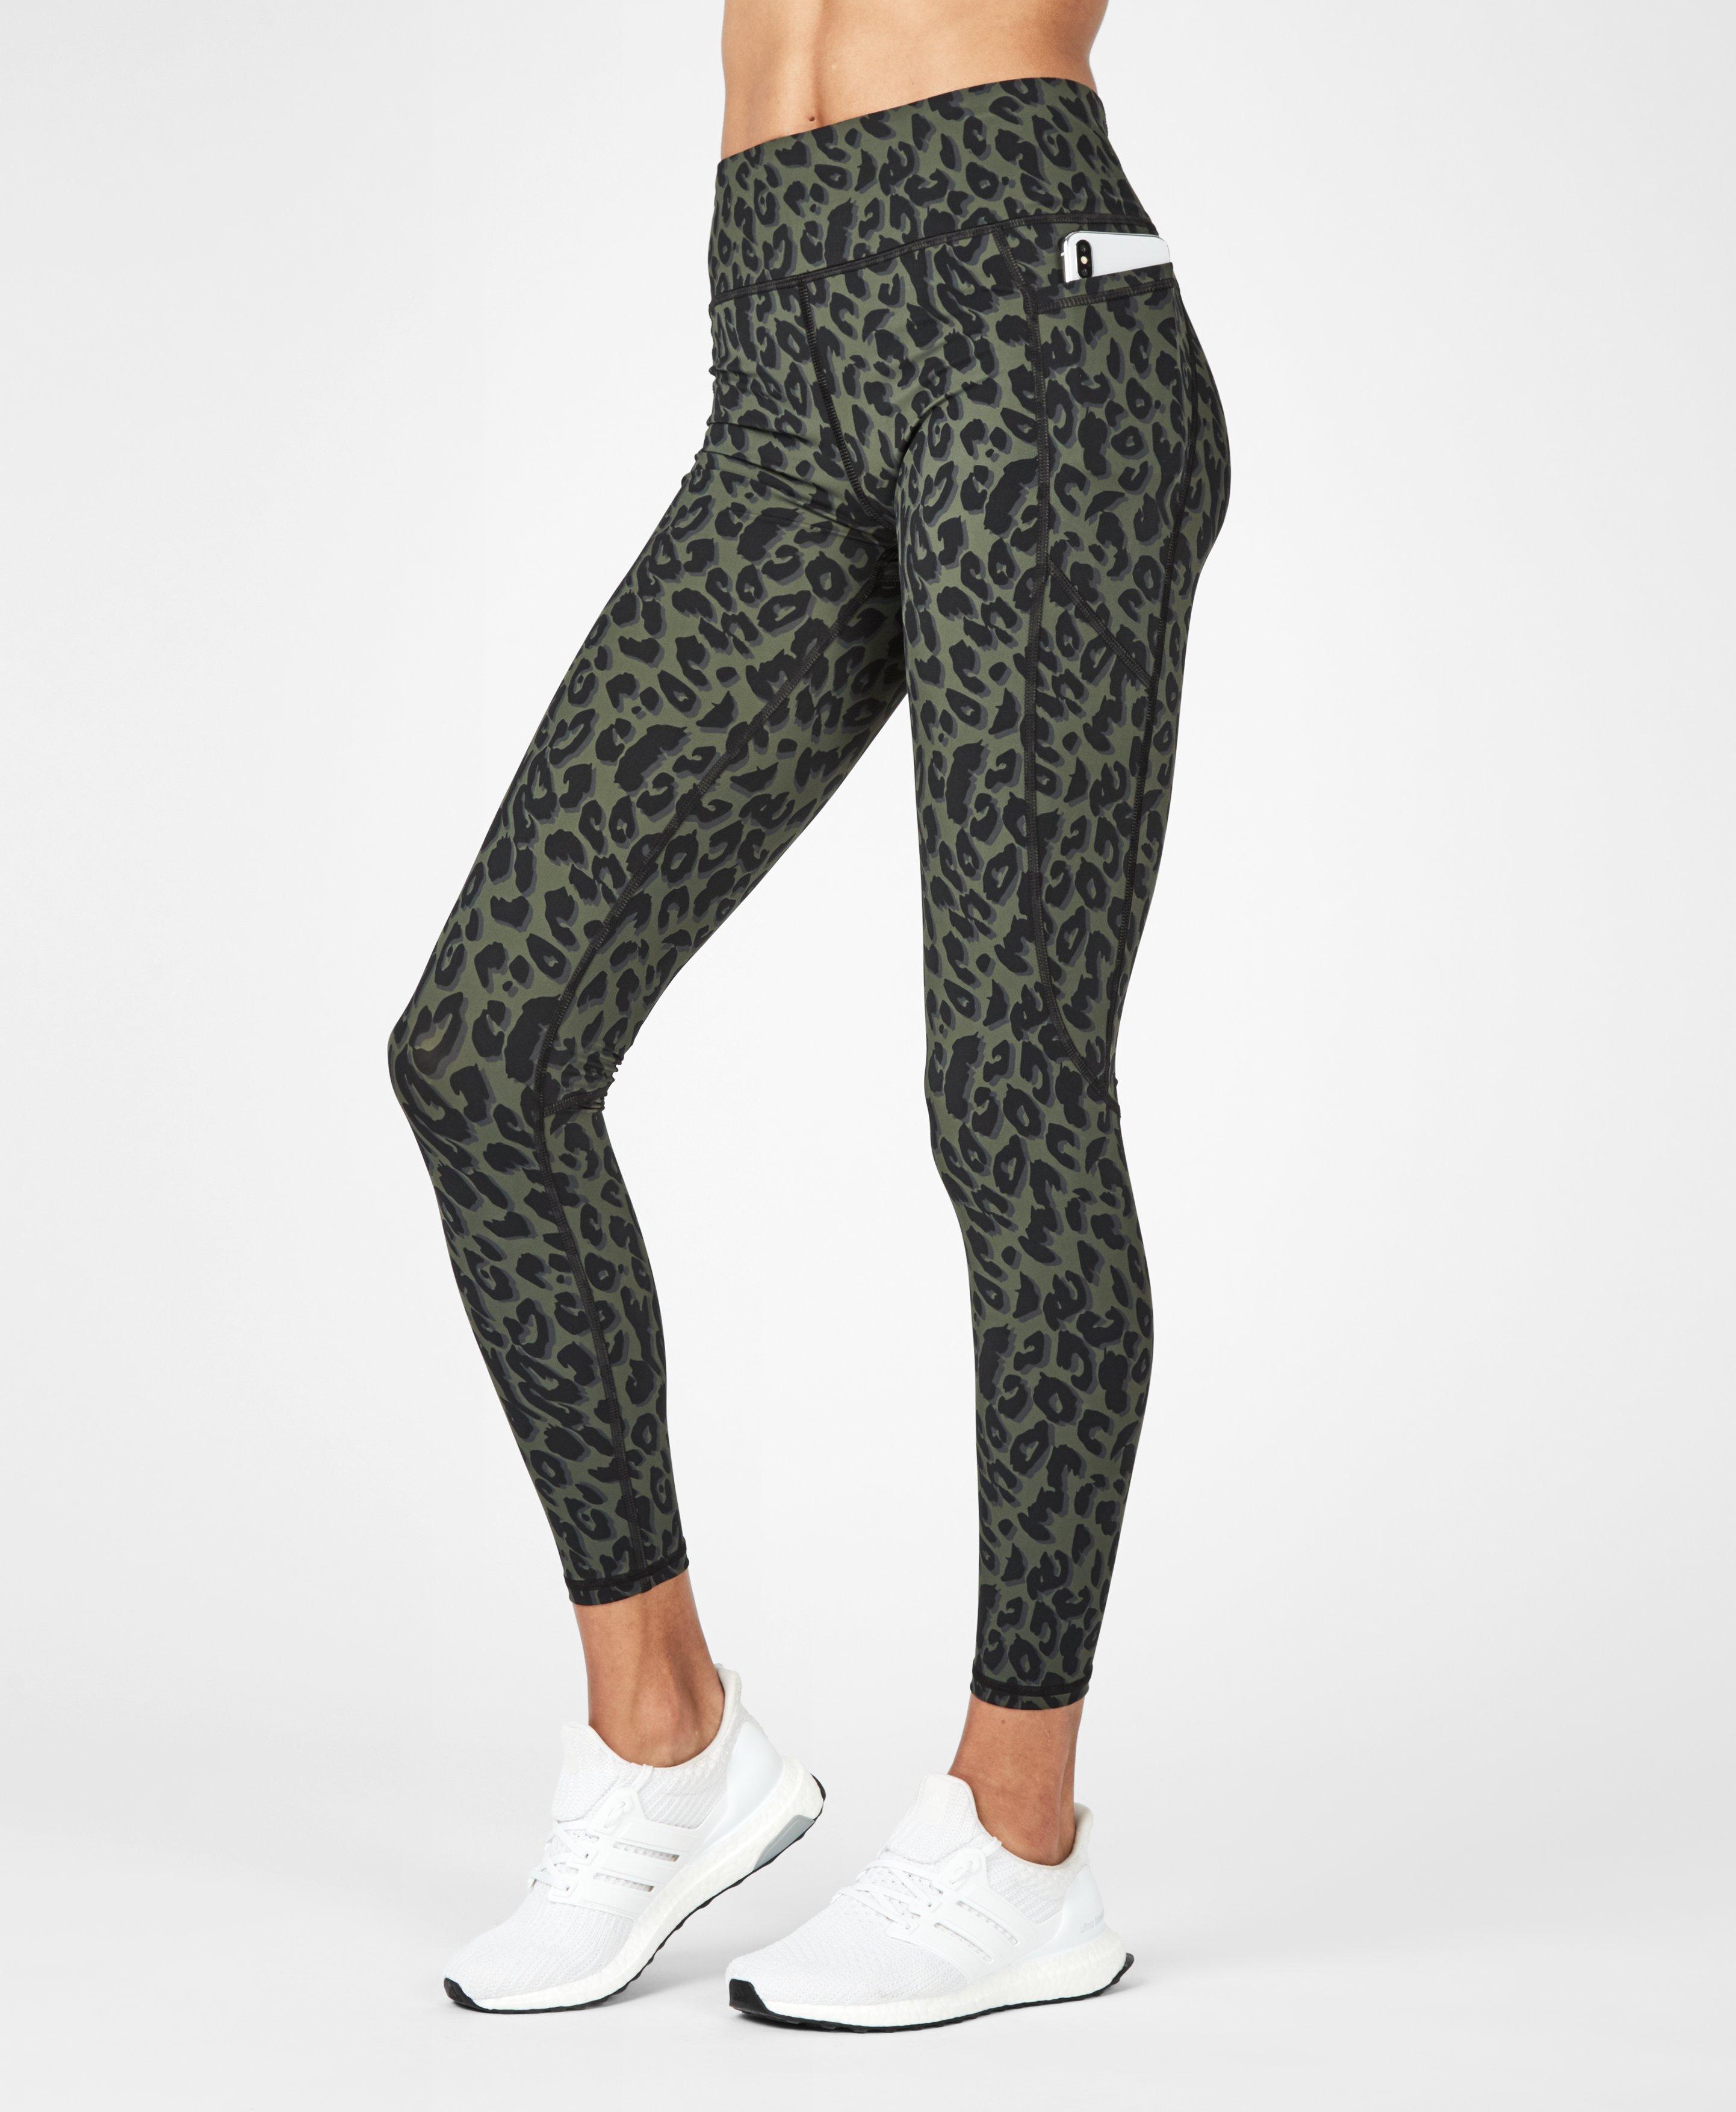 leopard athletic leggings